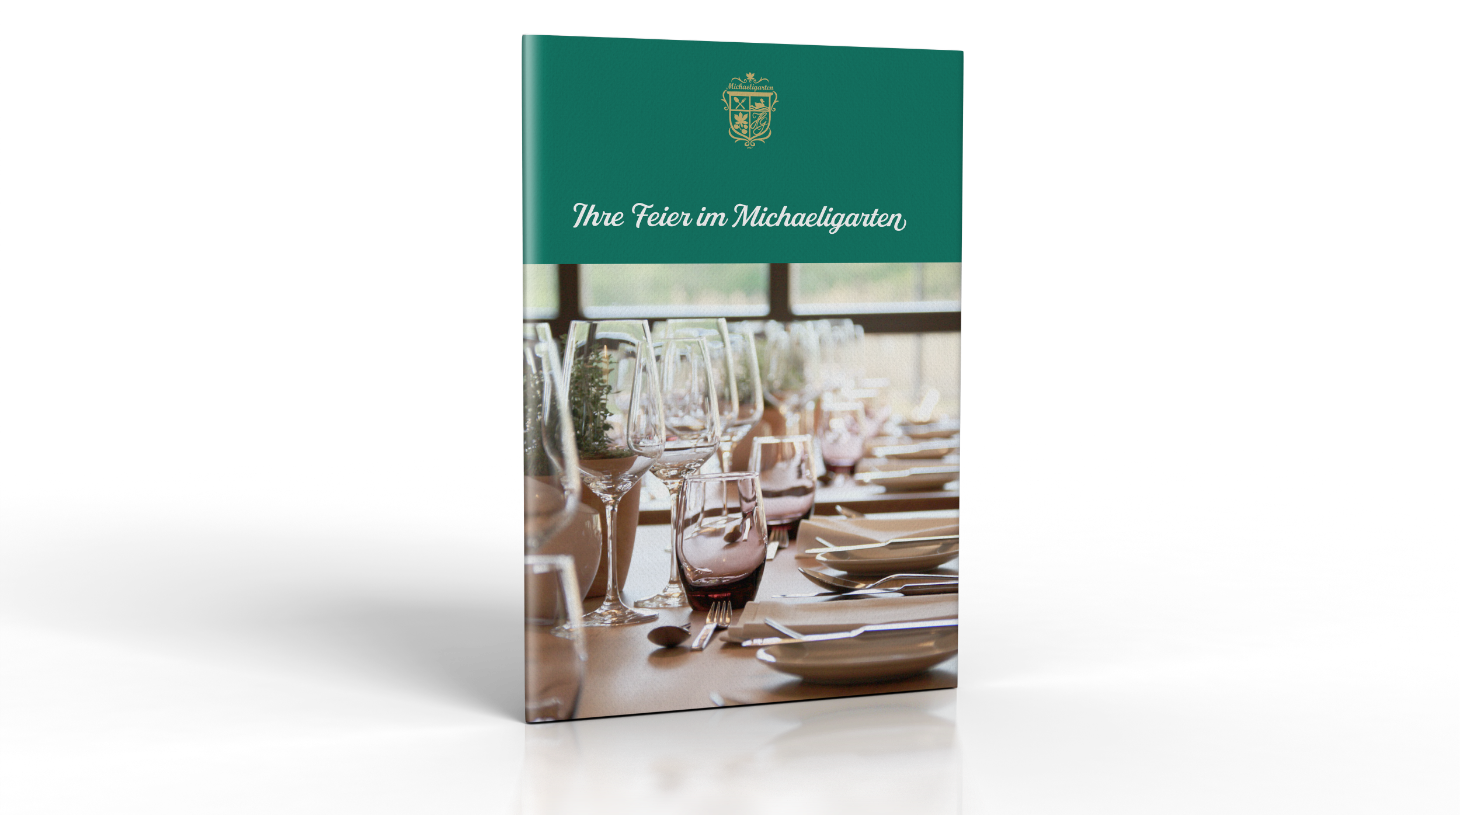 Mockup des Covers der Bankettmappe für die Gastronomie Michaeligarten in München.